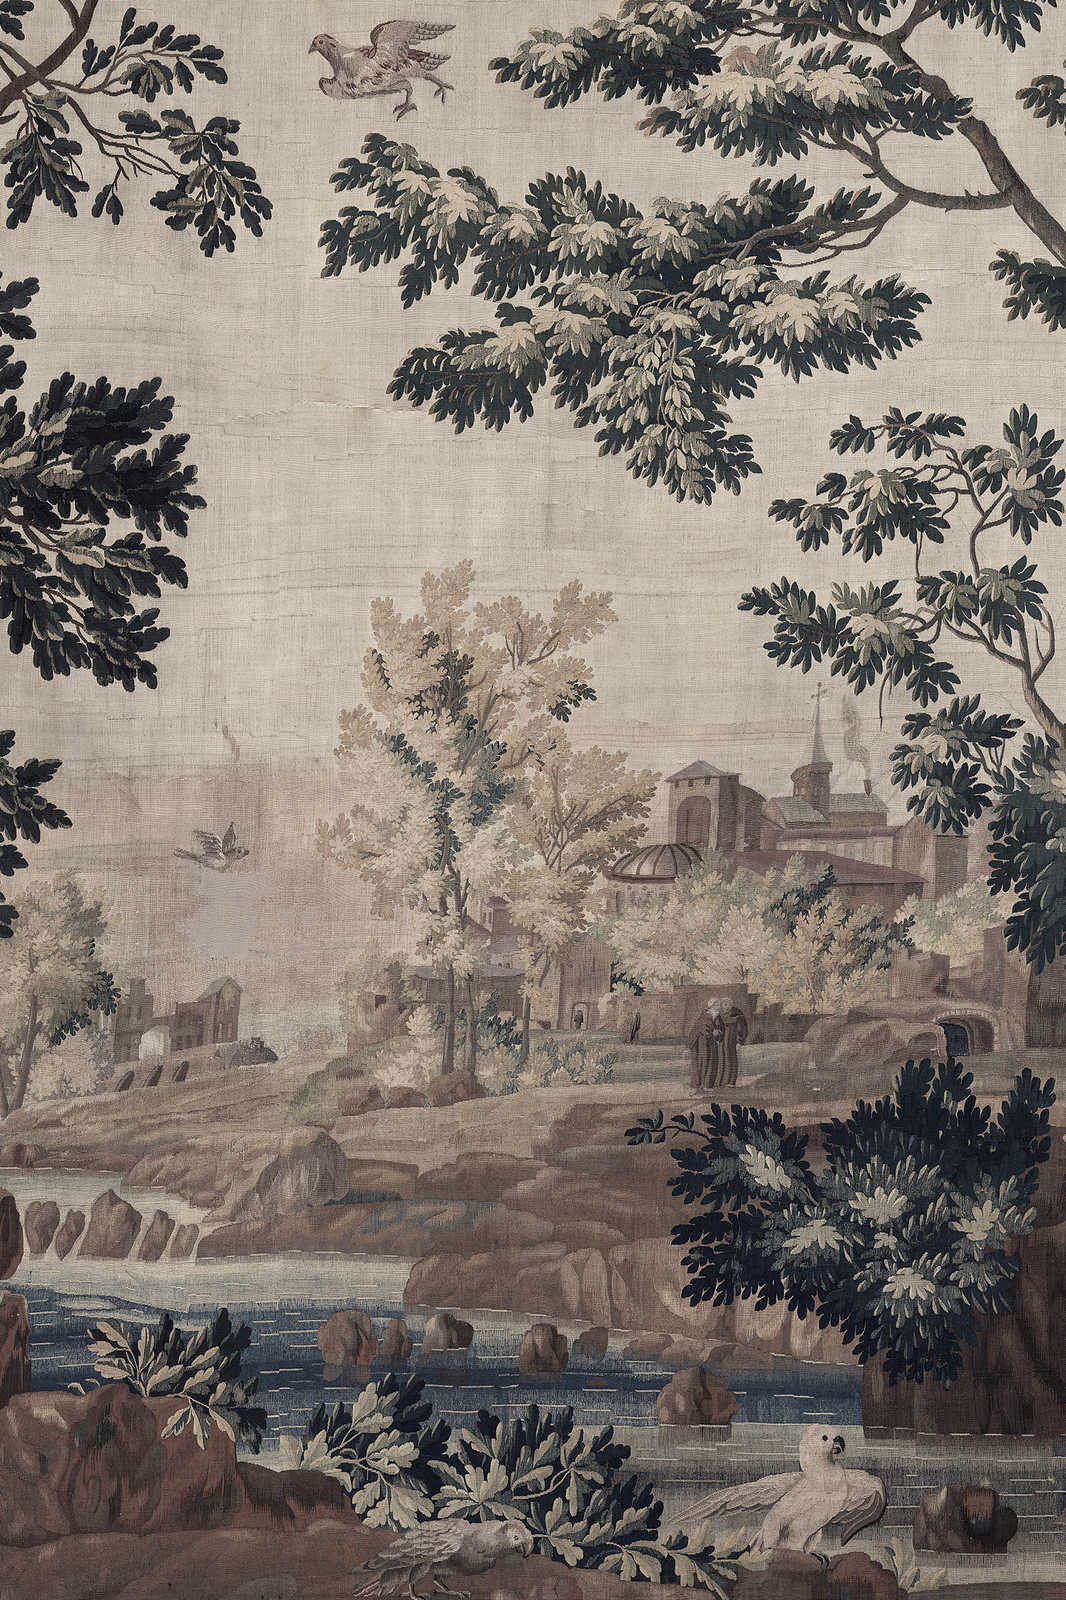             Gobelin Gallery 1 - Quadro di paesaggio su tela arazzo storico - 1,20 m x 0,80 m
        